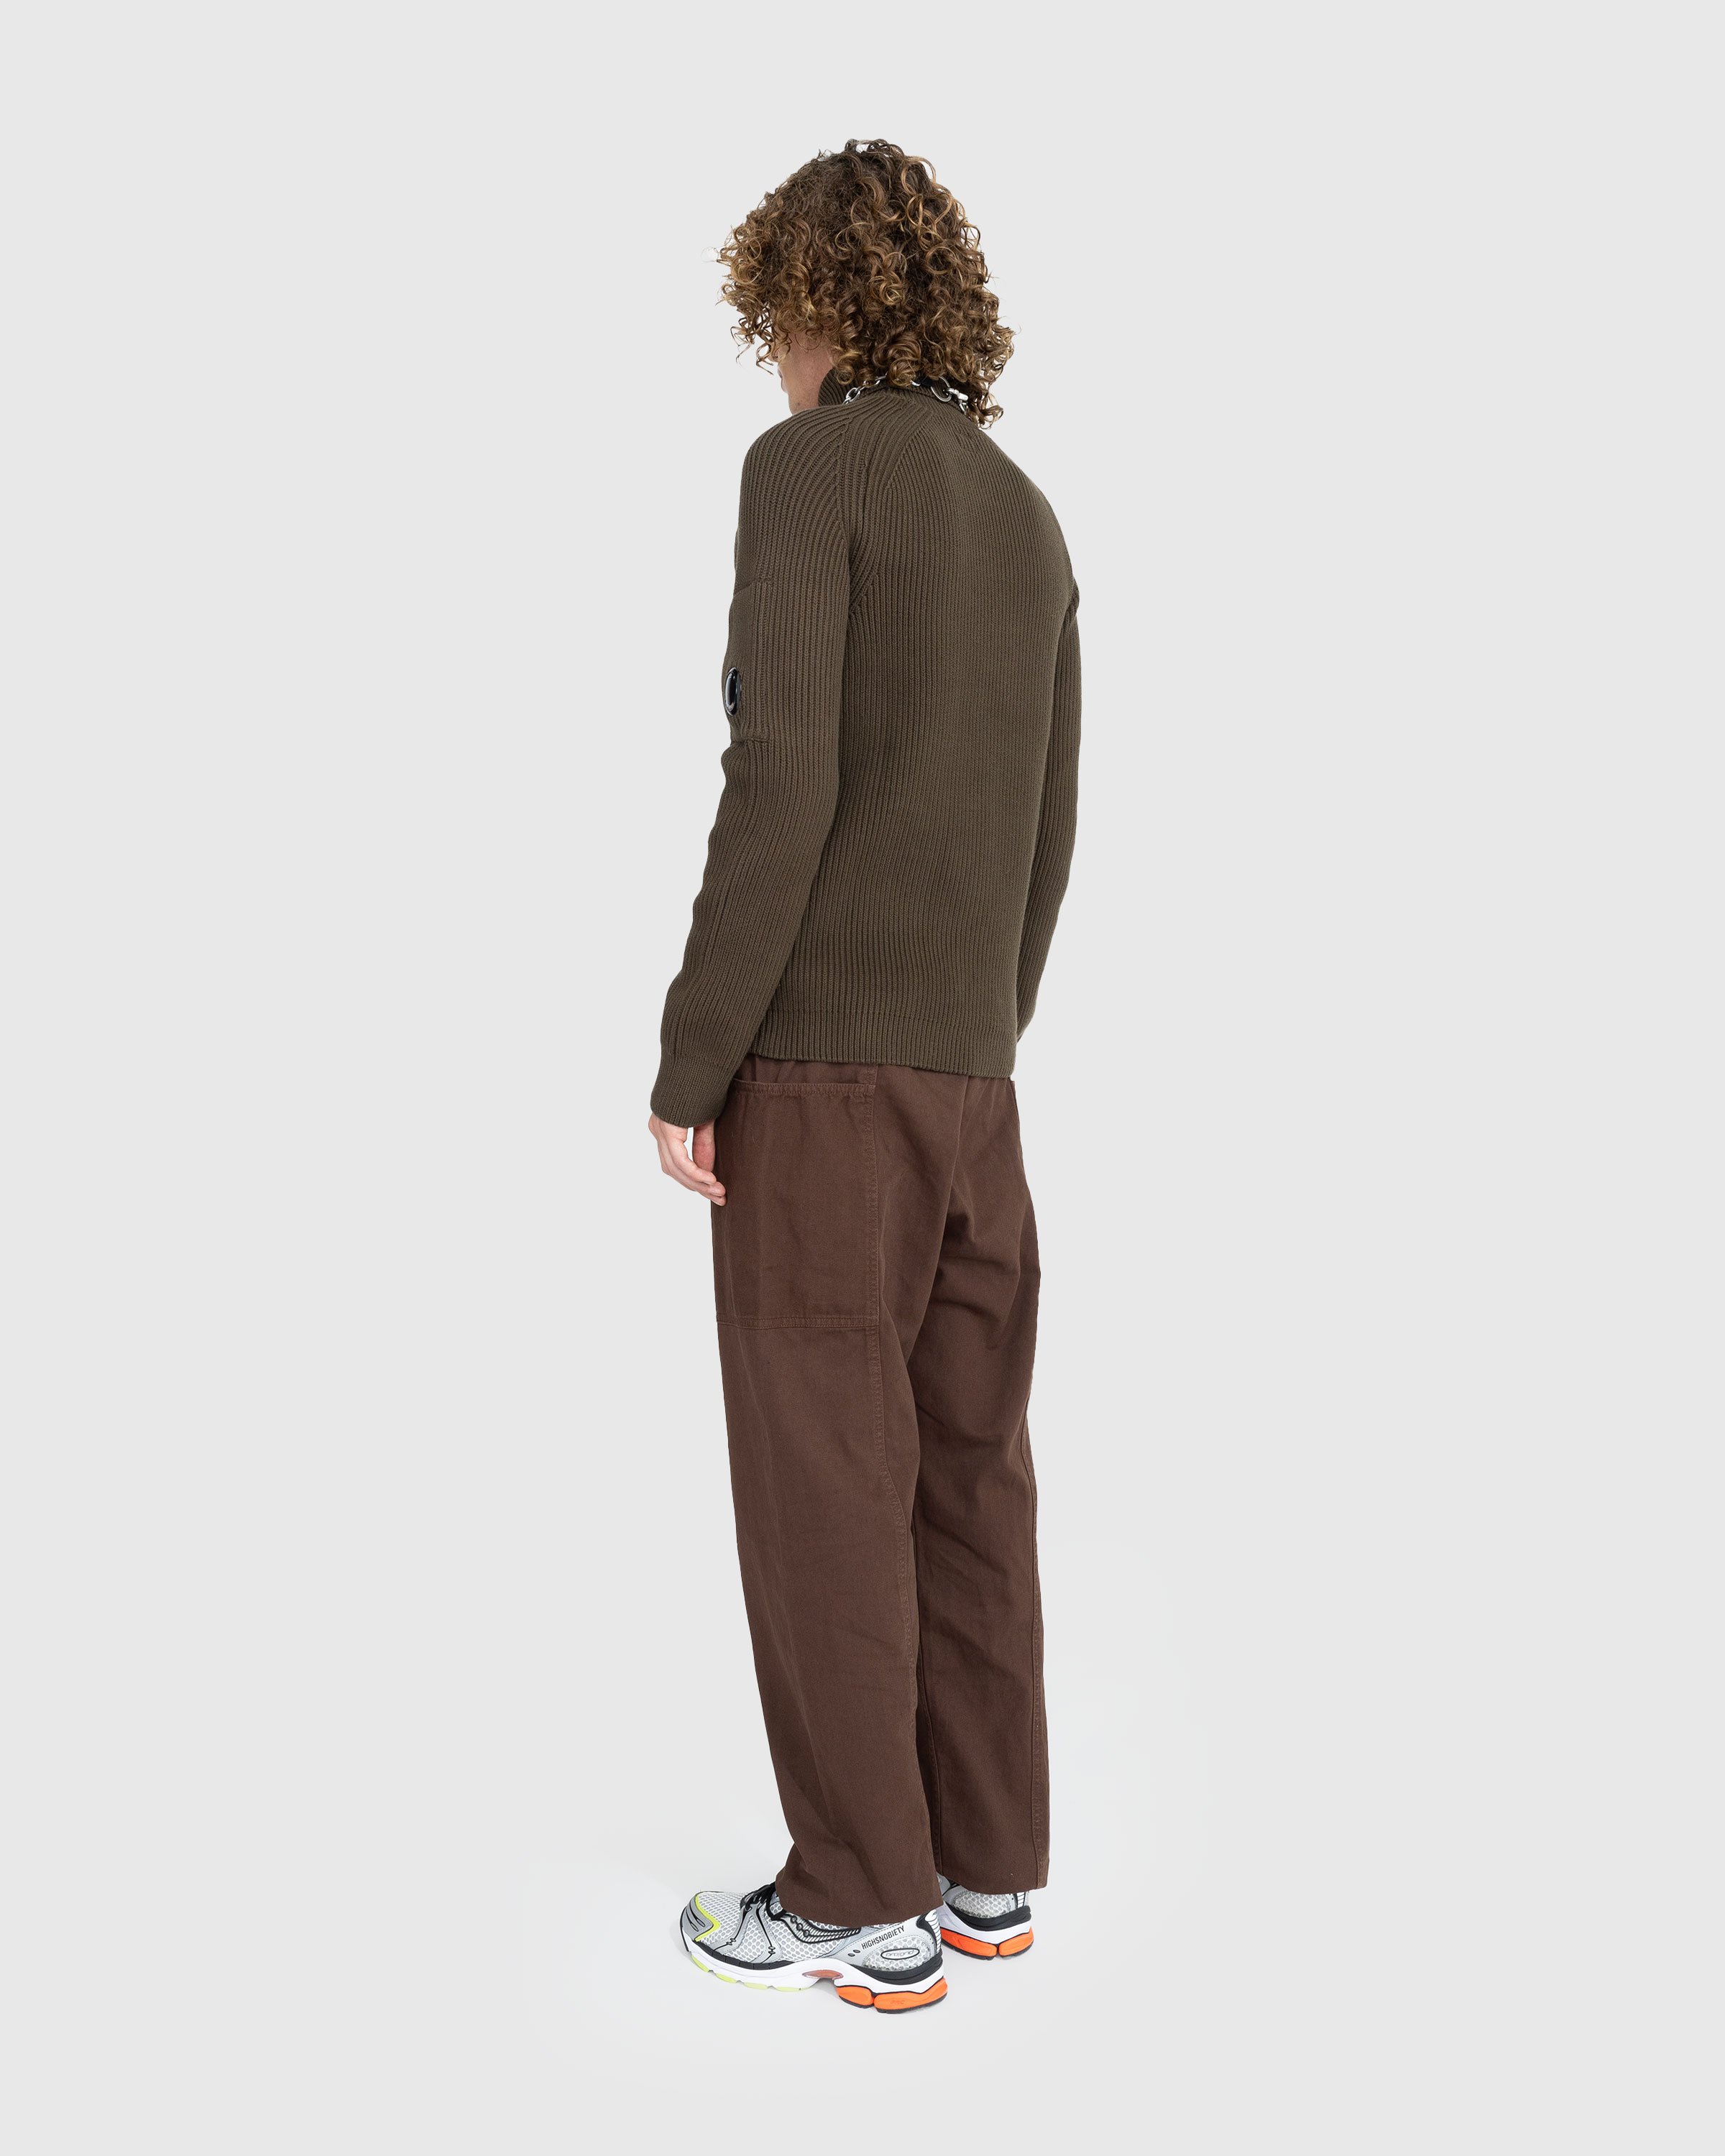 Gramicci - GADGET PANT - Clothing - Brown - Image 3